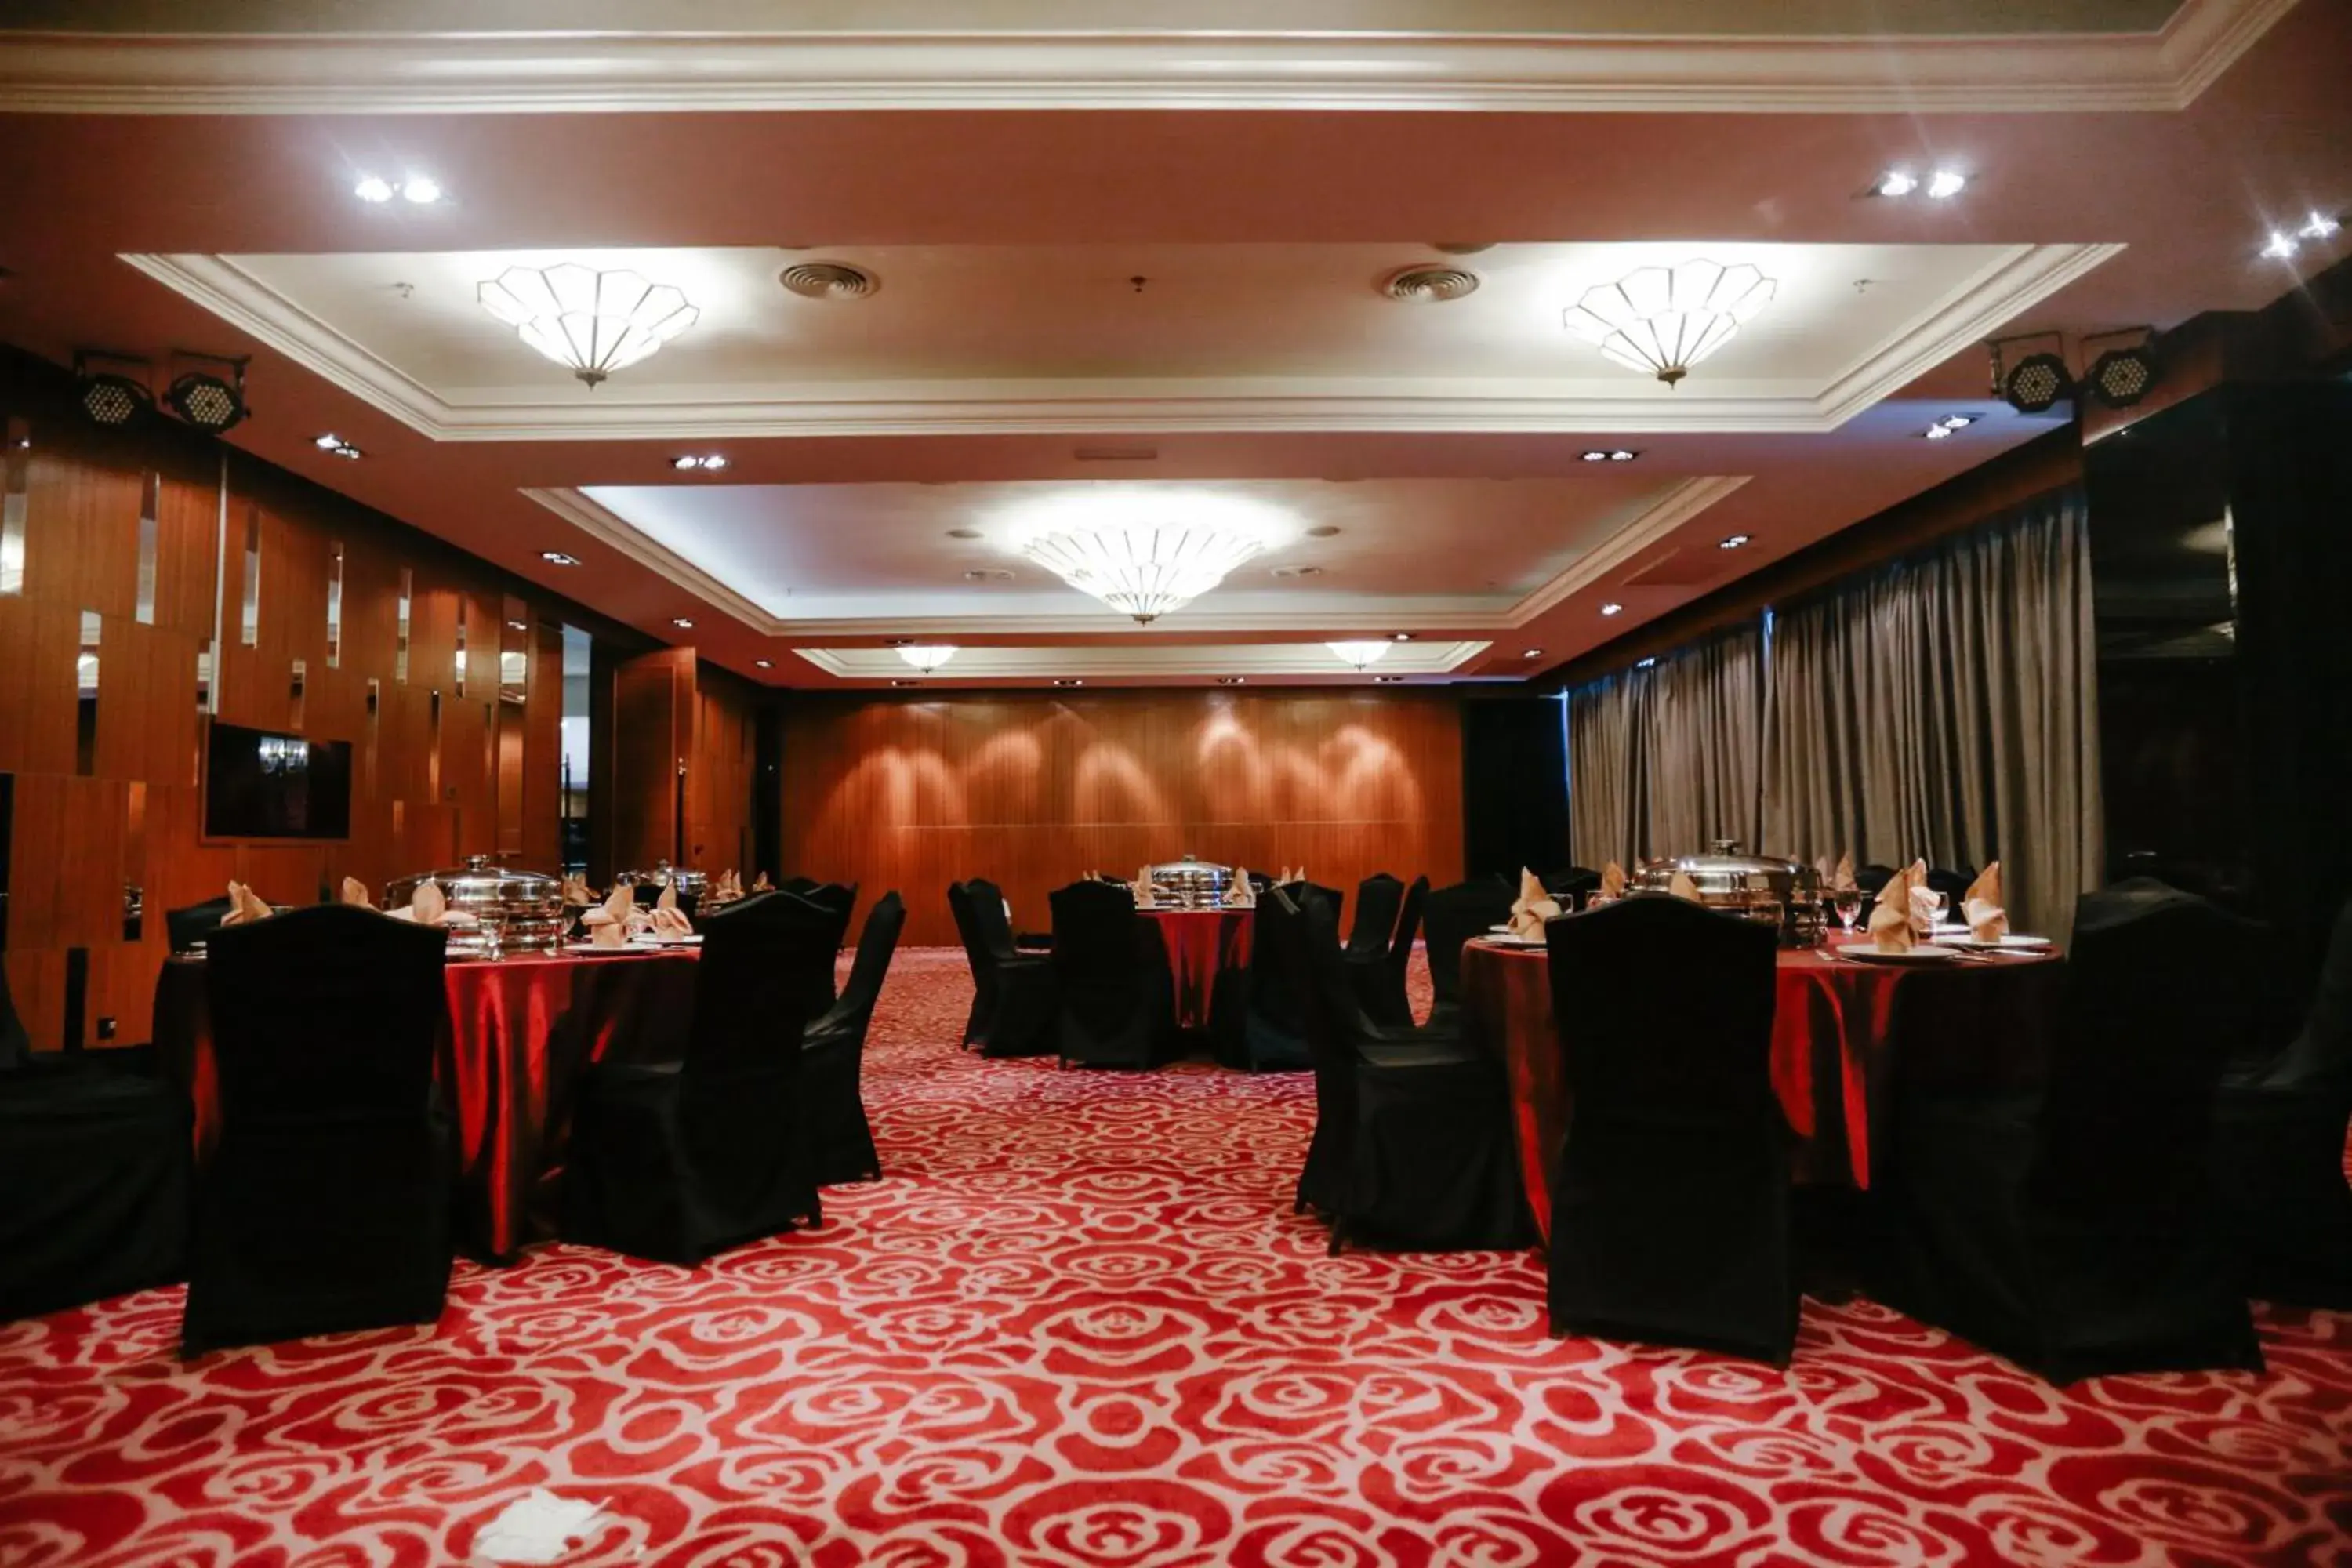 Banquet/Function facilities, Banquet Facilities in Hotel Granada Johor Bahru